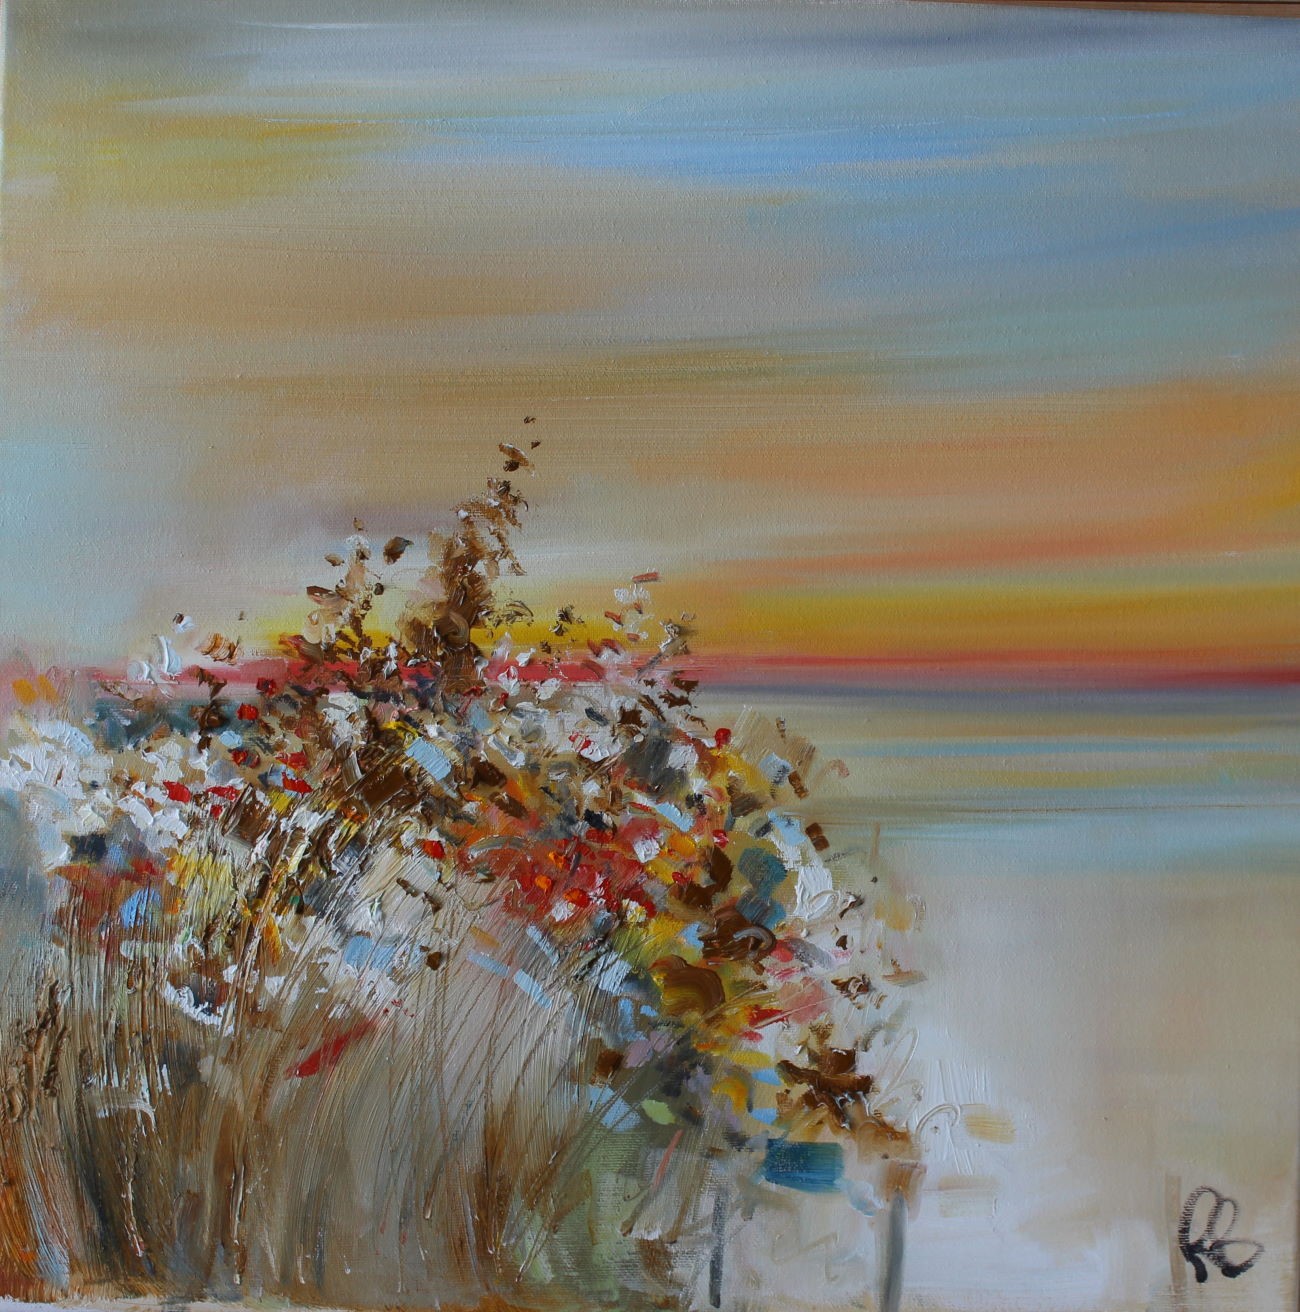 'Floral Shores' by artist Rosanne Barr